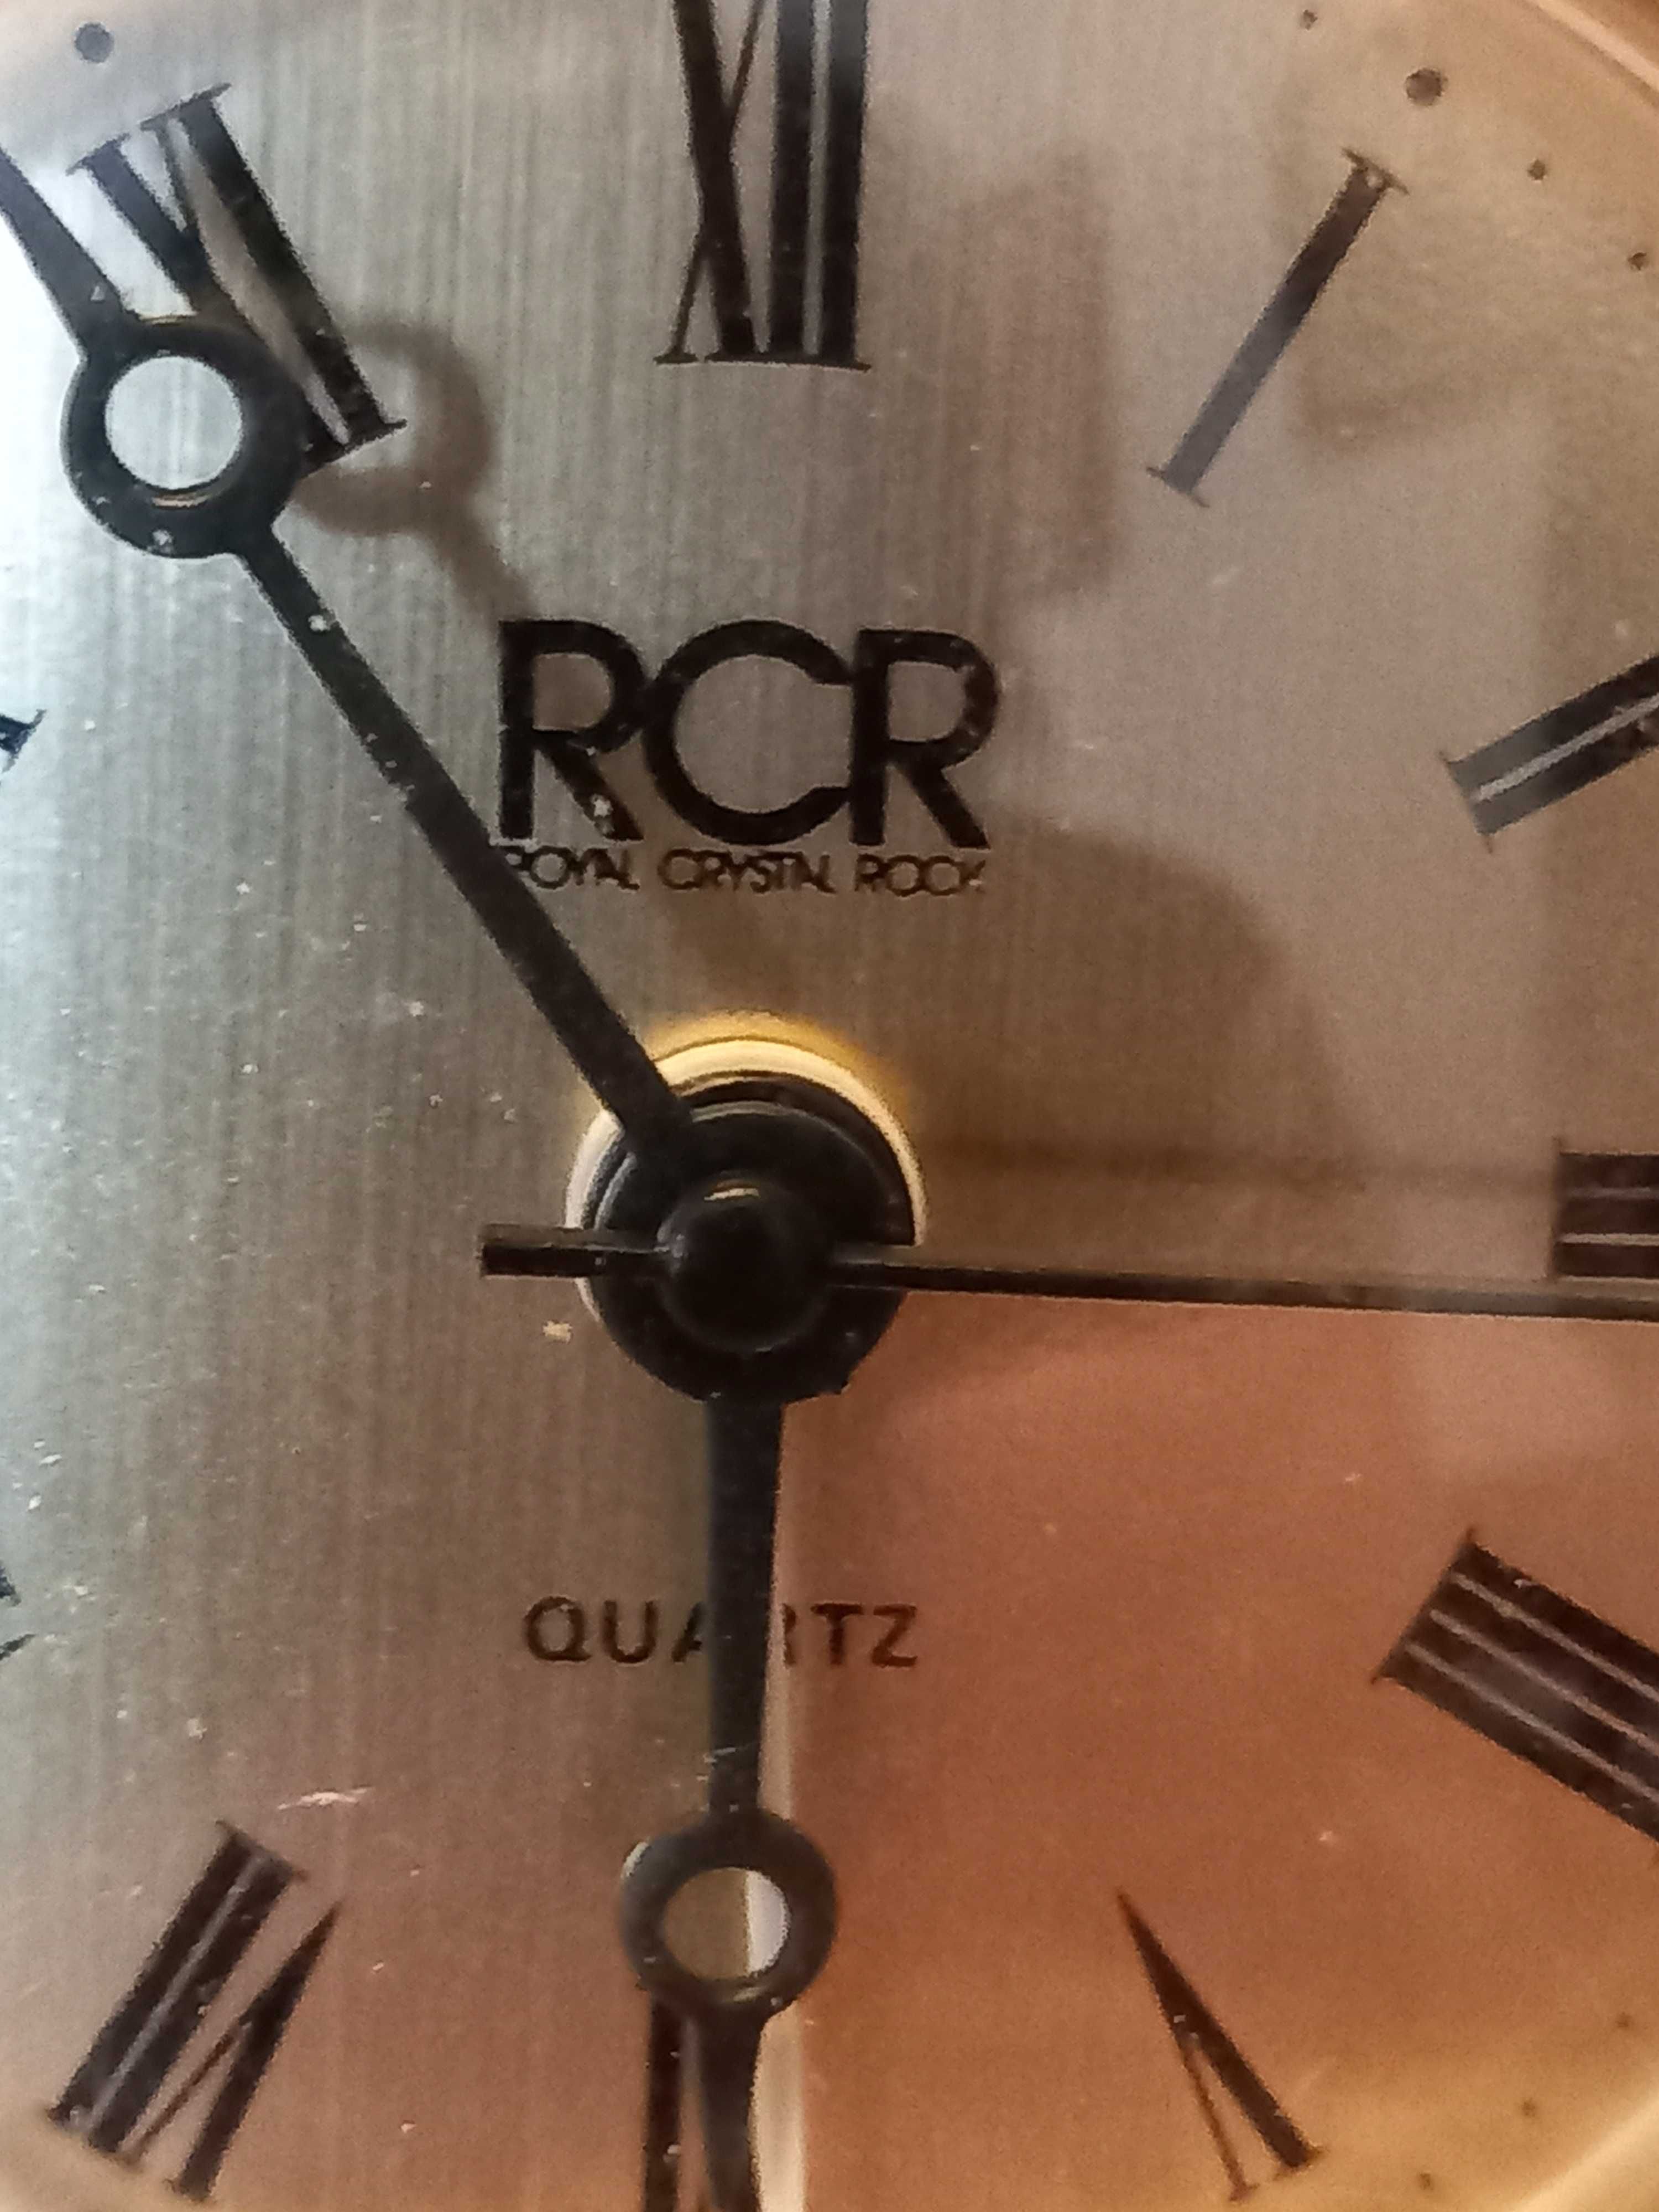 Relógio de mesa em cristral RCR 
Dimensões largura 14cm e altura 10cm